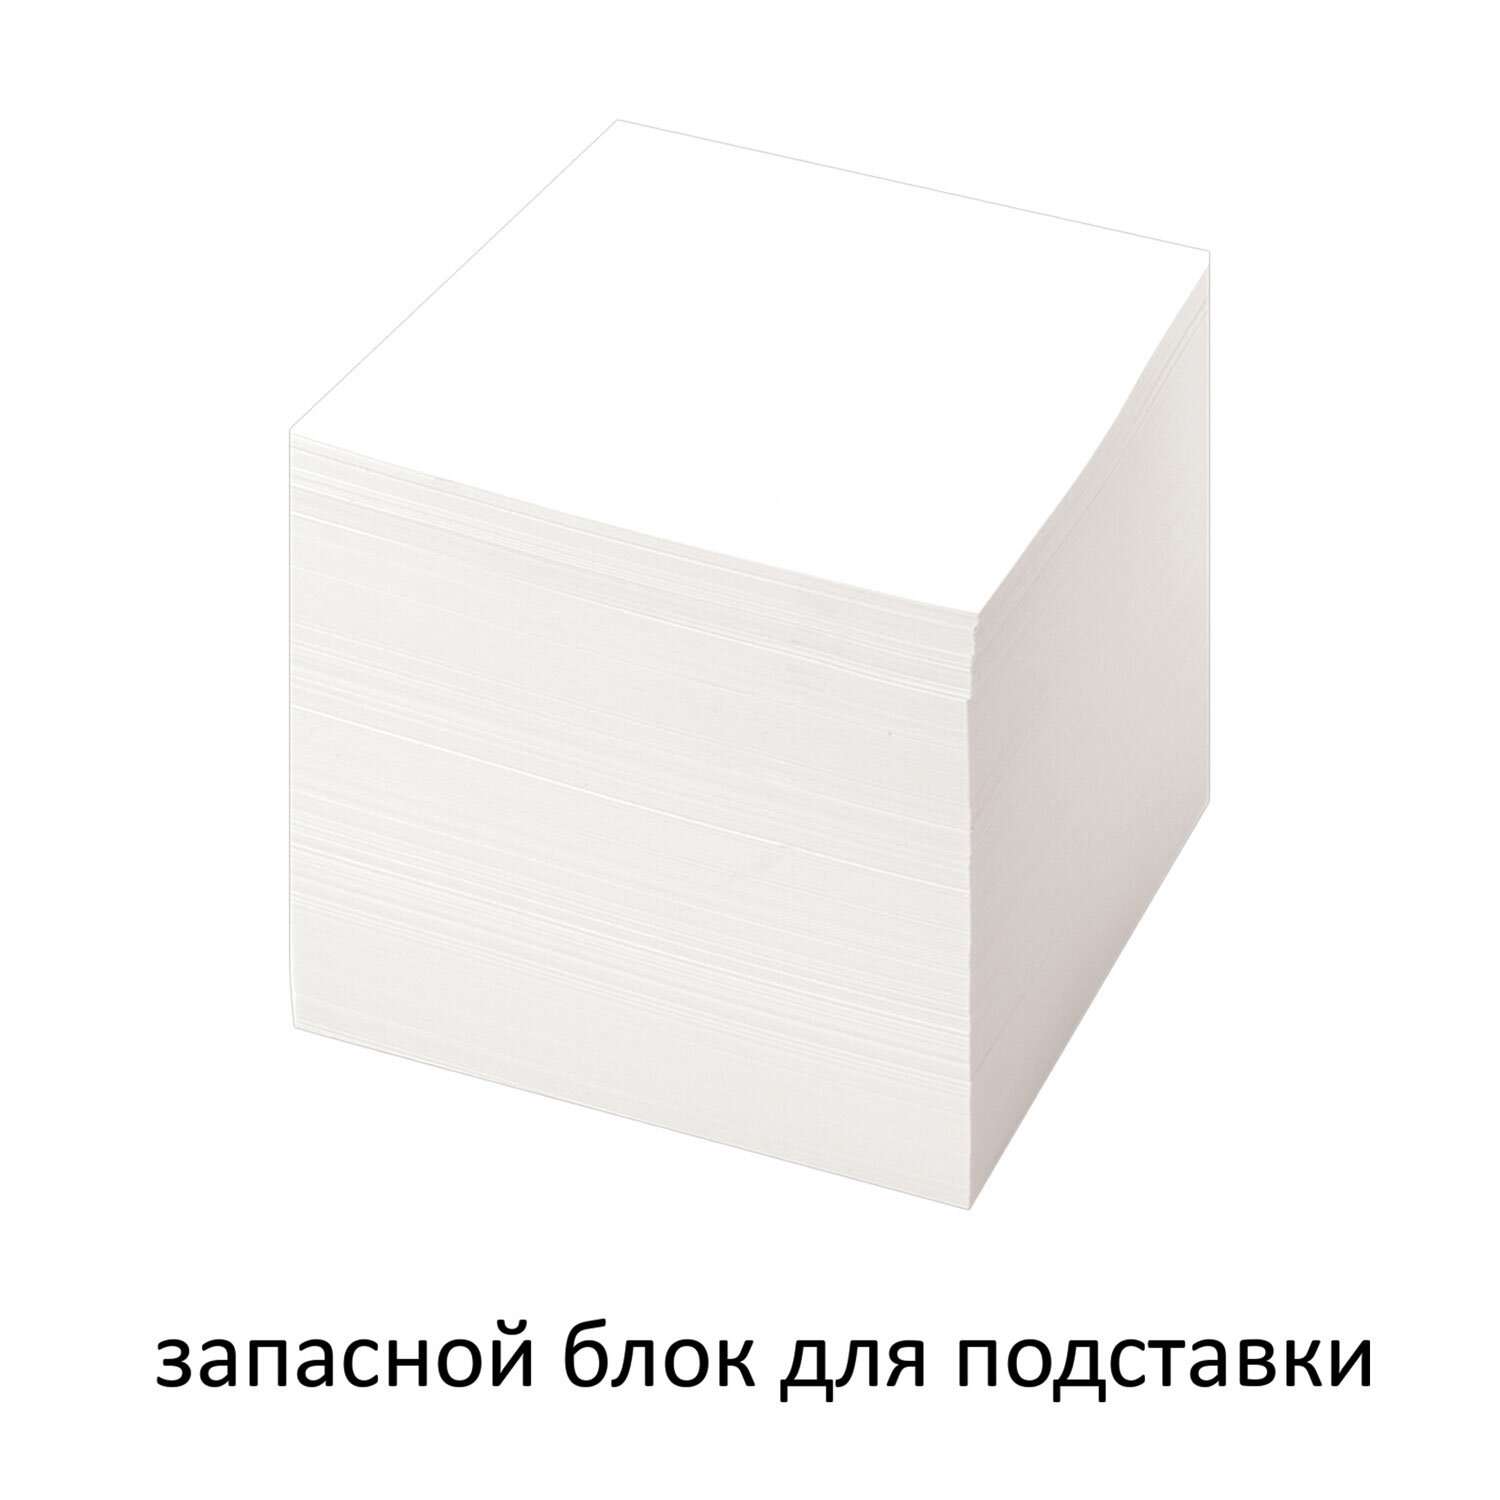 Блок бумажный Staff для записей и заметок непроклеенный куб 9х9х9 см белый - фото 3